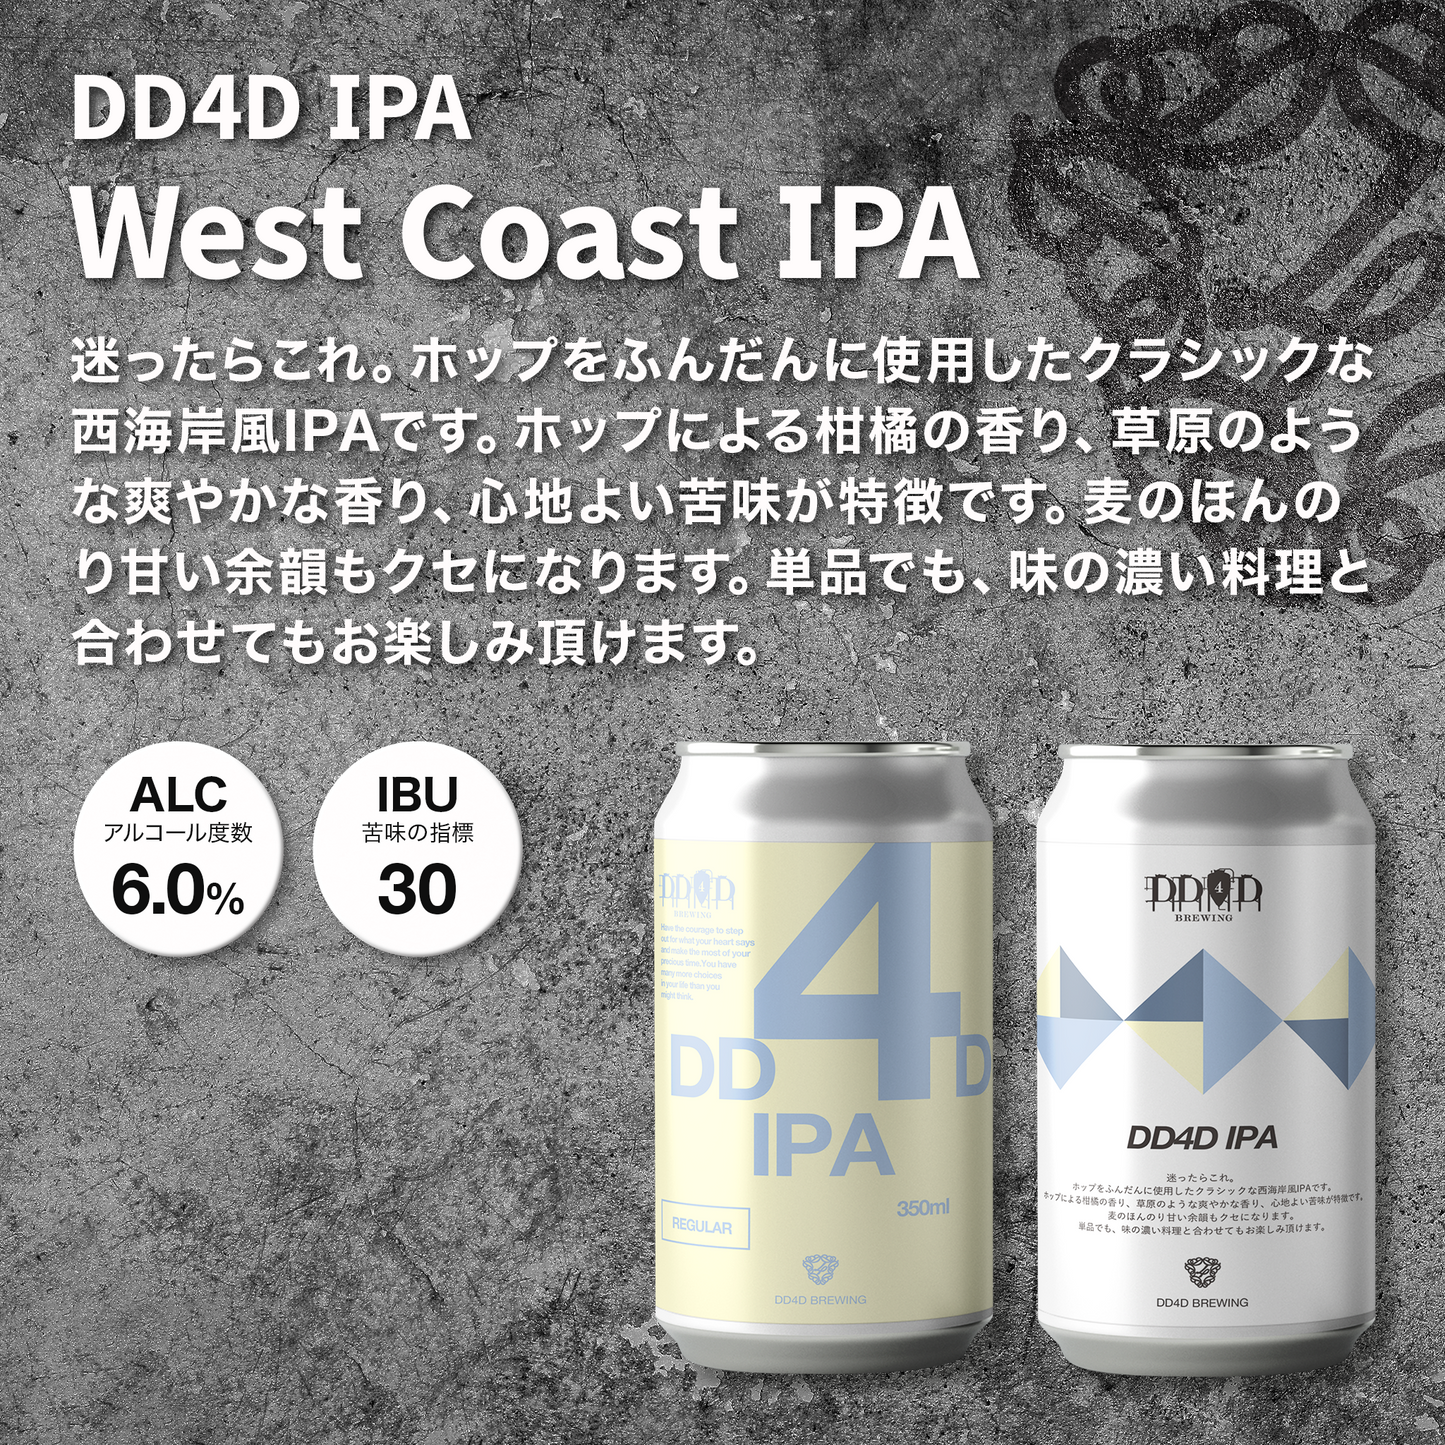 DD4D IPA (West Coast IPA)